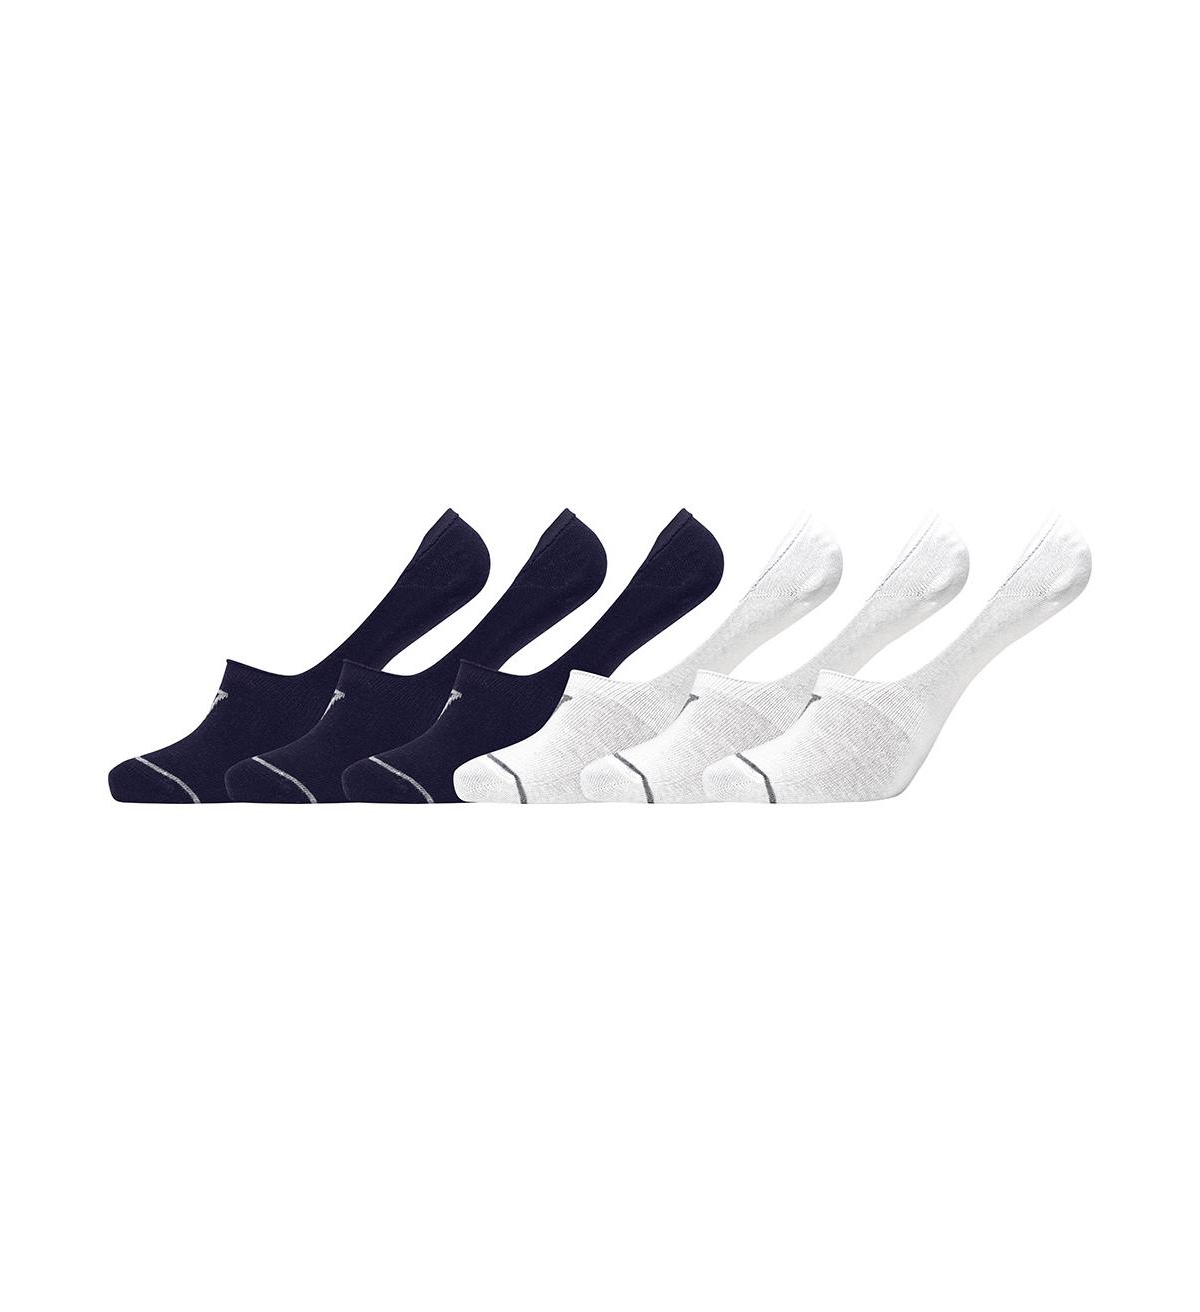 Men's Athletic Footie Socks, Pack of 6 - Black, White